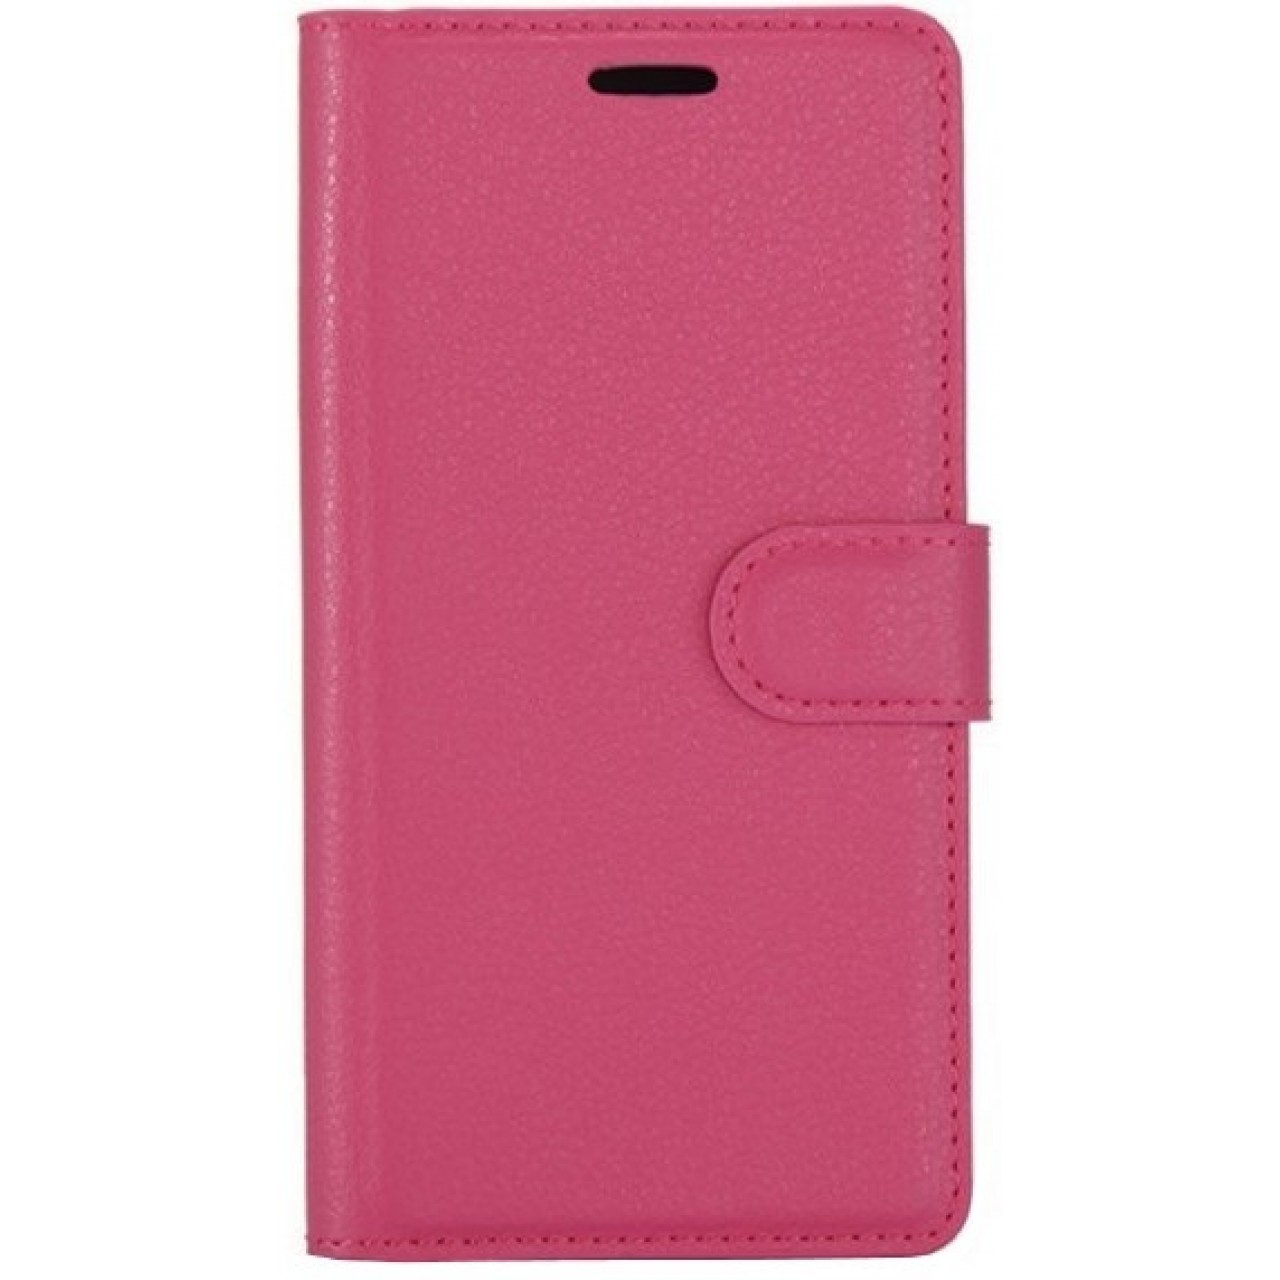 Θήκη Nokia 3 PU Leather Πορτοφόλι flip - 2953 - Φούξια - OEM